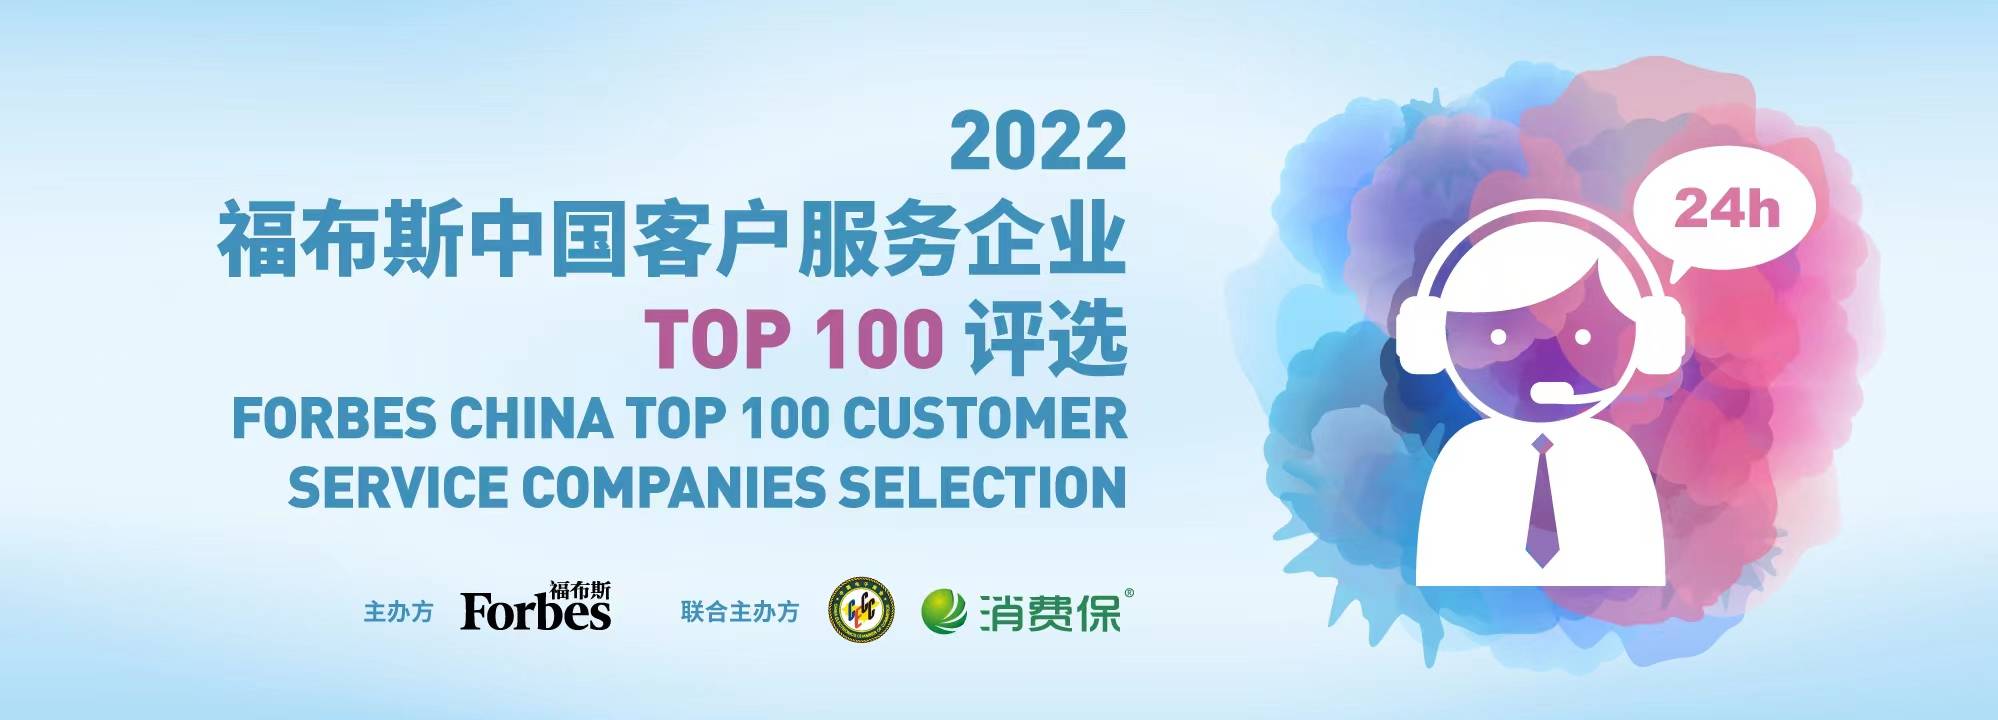 福布斯全球企业排行榜_福布斯发布2022年全球区块链50强,蚂蚁、腾讯、百度等中国企业上榜